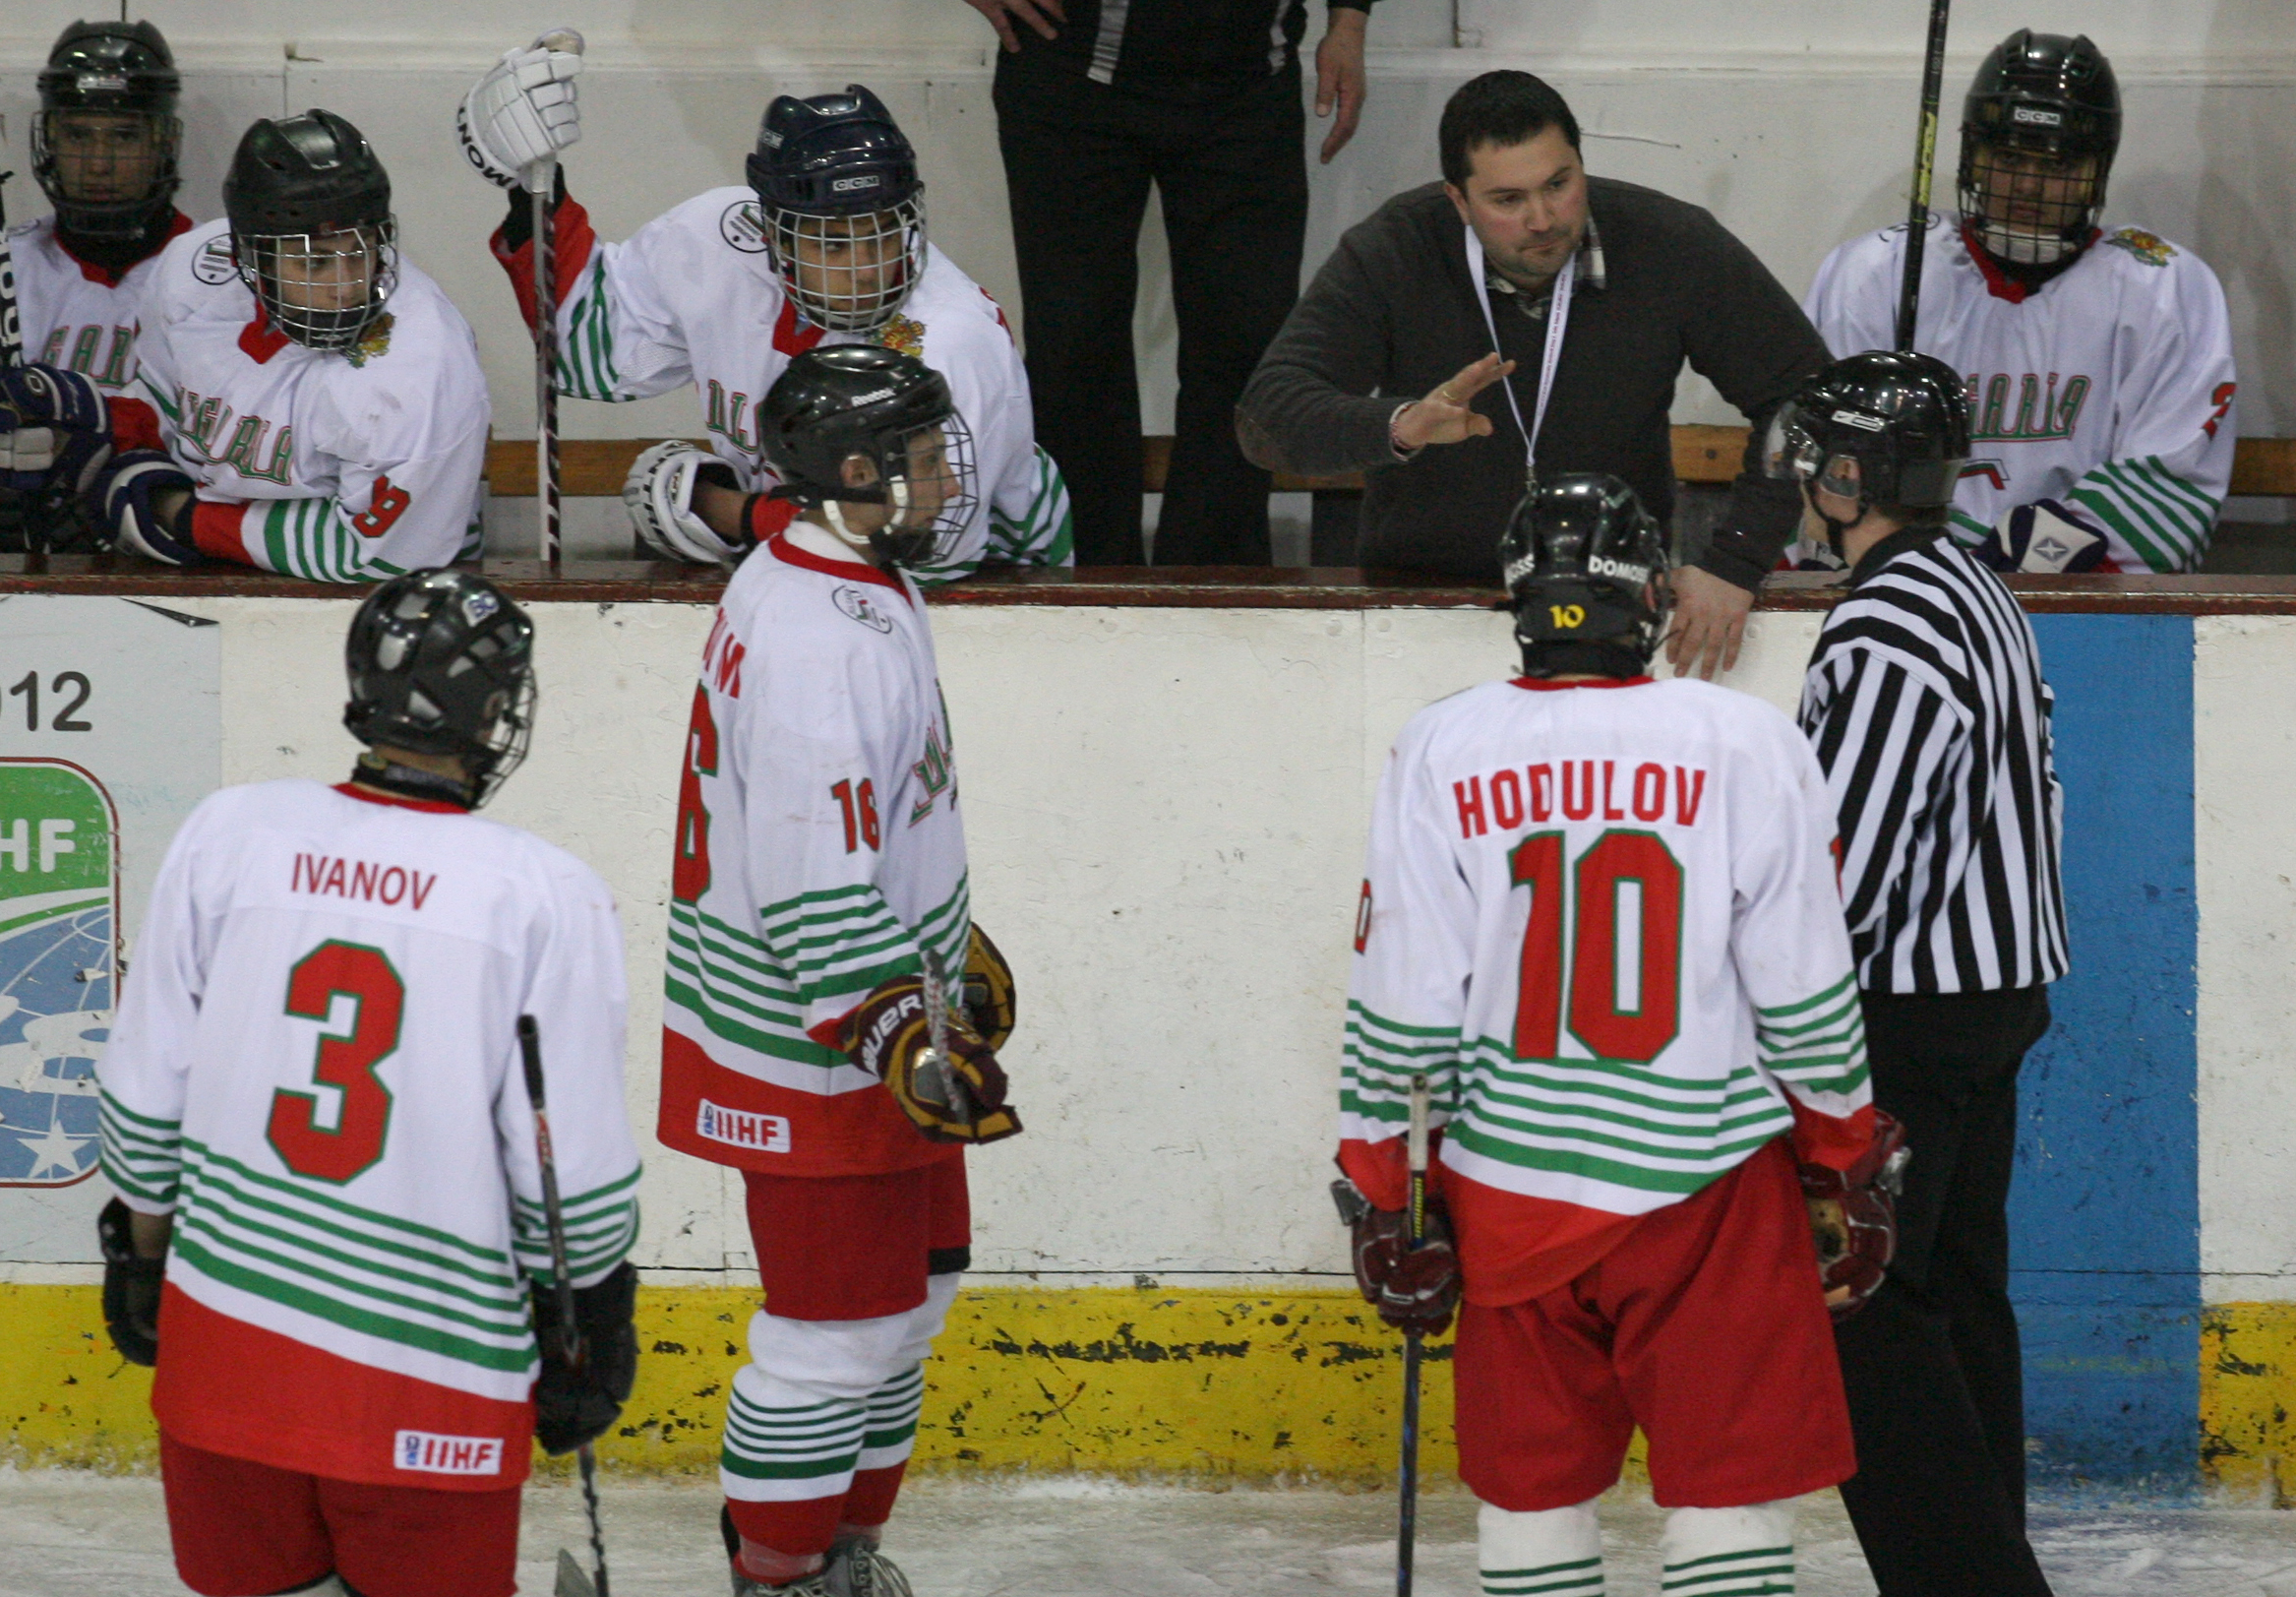 Това е второ световно първенство по хокей на лед, което България приема само в рамките на месец